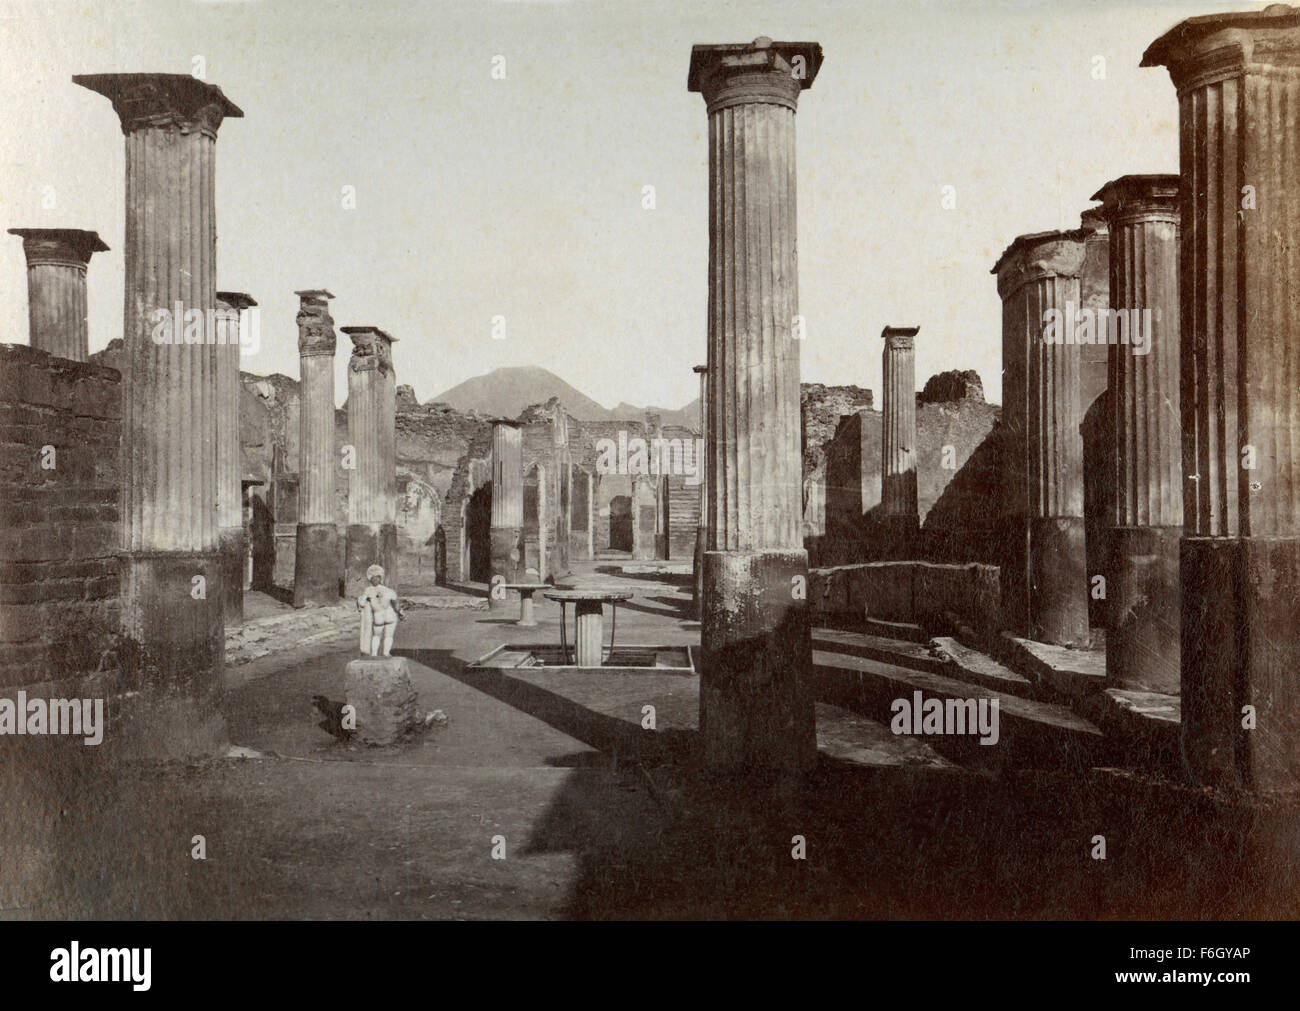 Marcus Oleonio's home, Pompeii, Italy Stock Photo